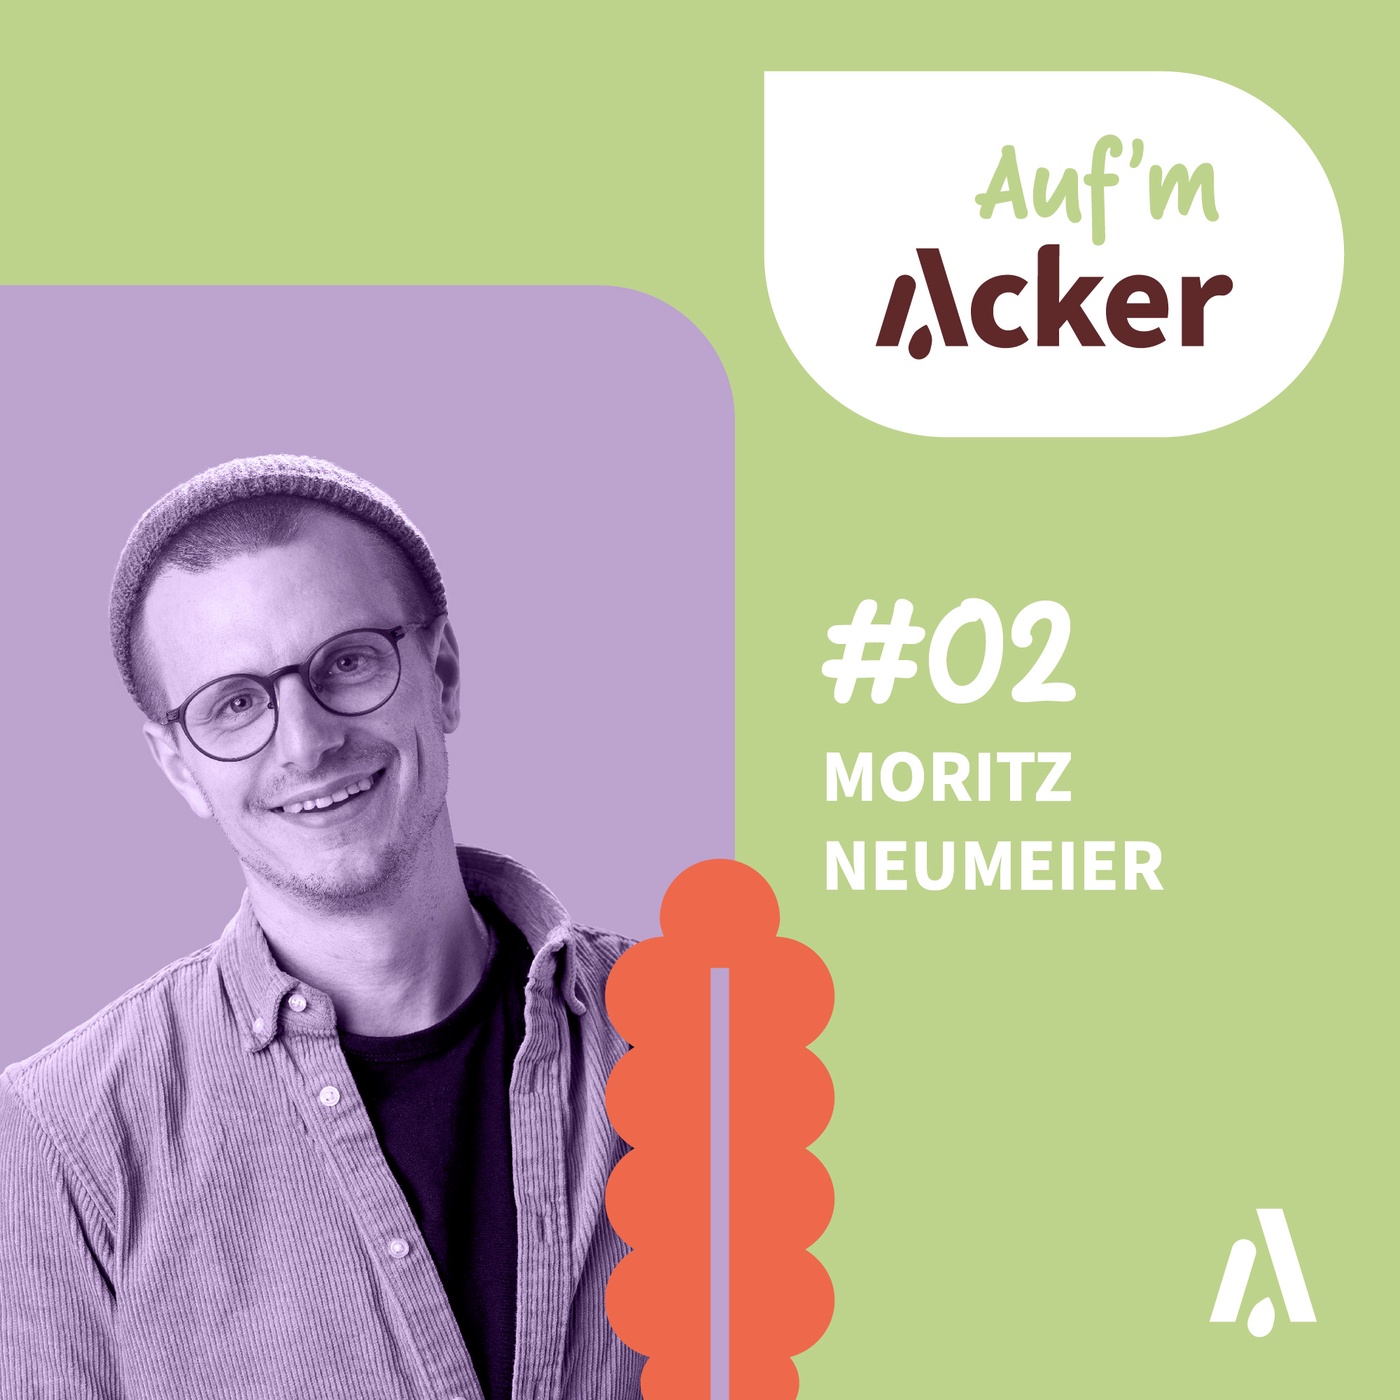 #02: Auf'm Acker mit Moritz Neumeier